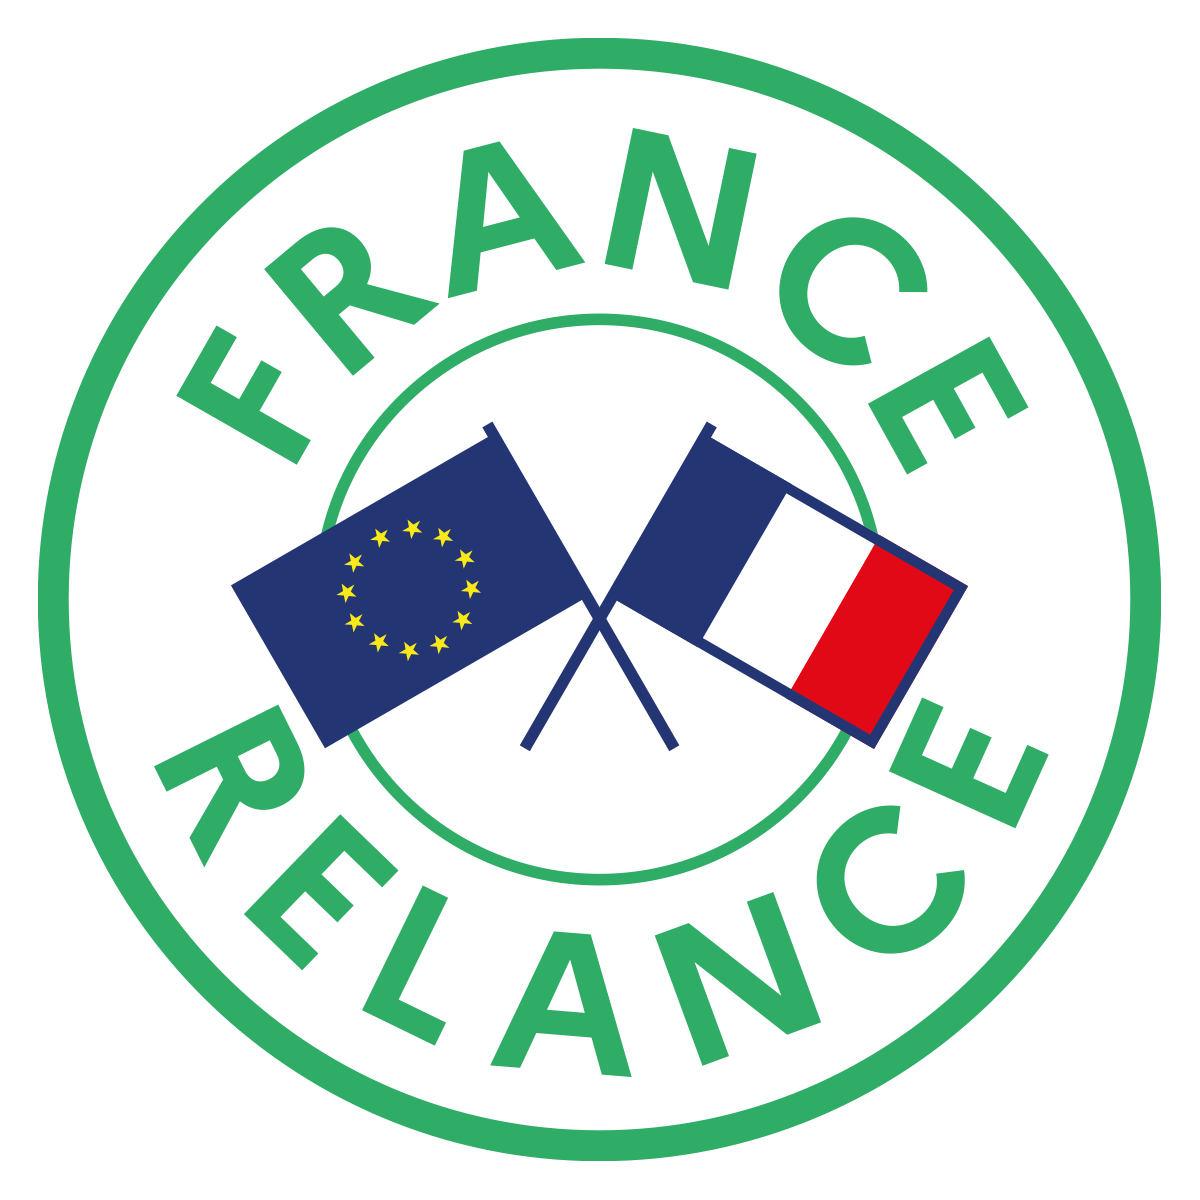 France Relance logo